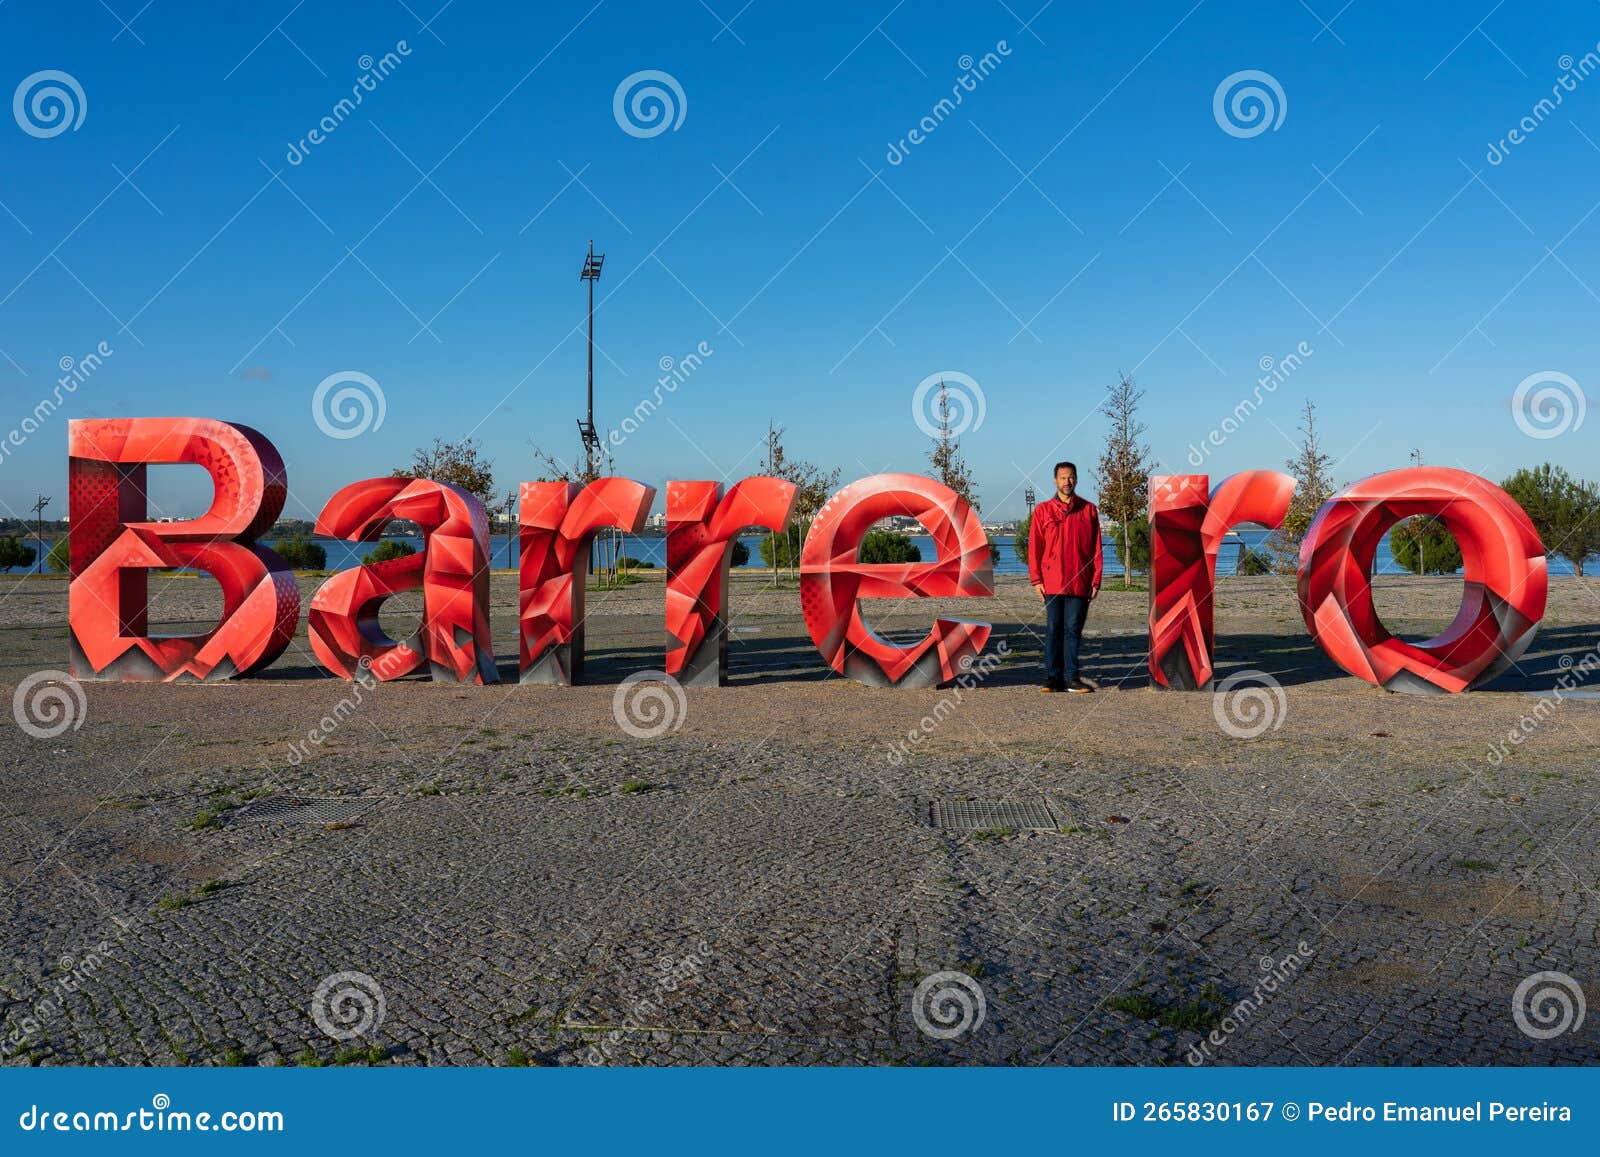 Rote 3D-Buchstaben Zur Bezeichnung Der Stadt Barreiro, Deren